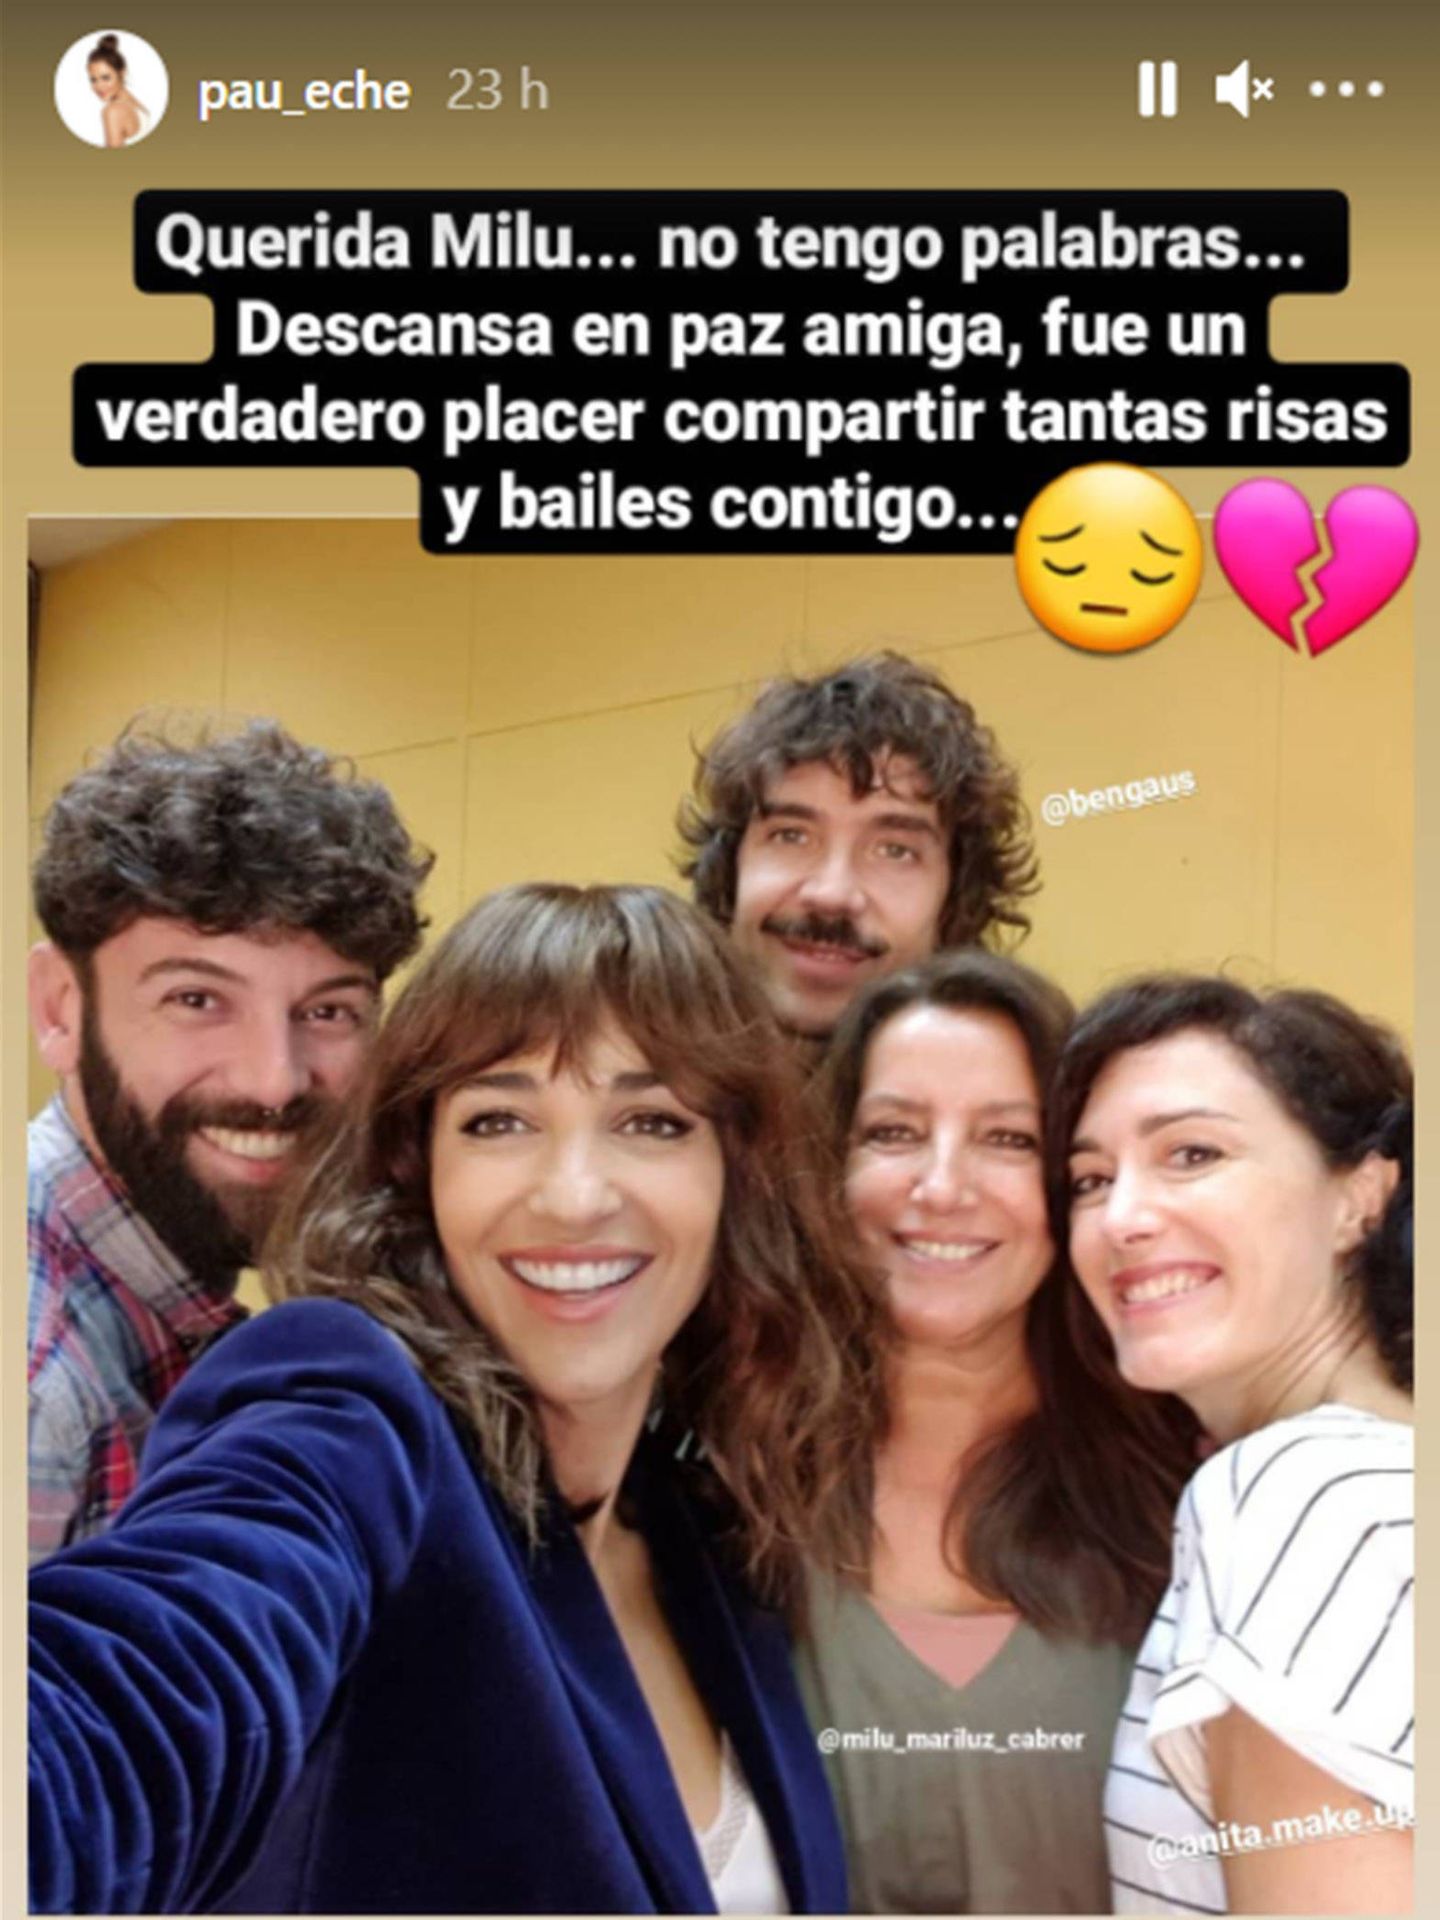 El mensaje de Paula Echevarría. (Instagram @pau_eche)